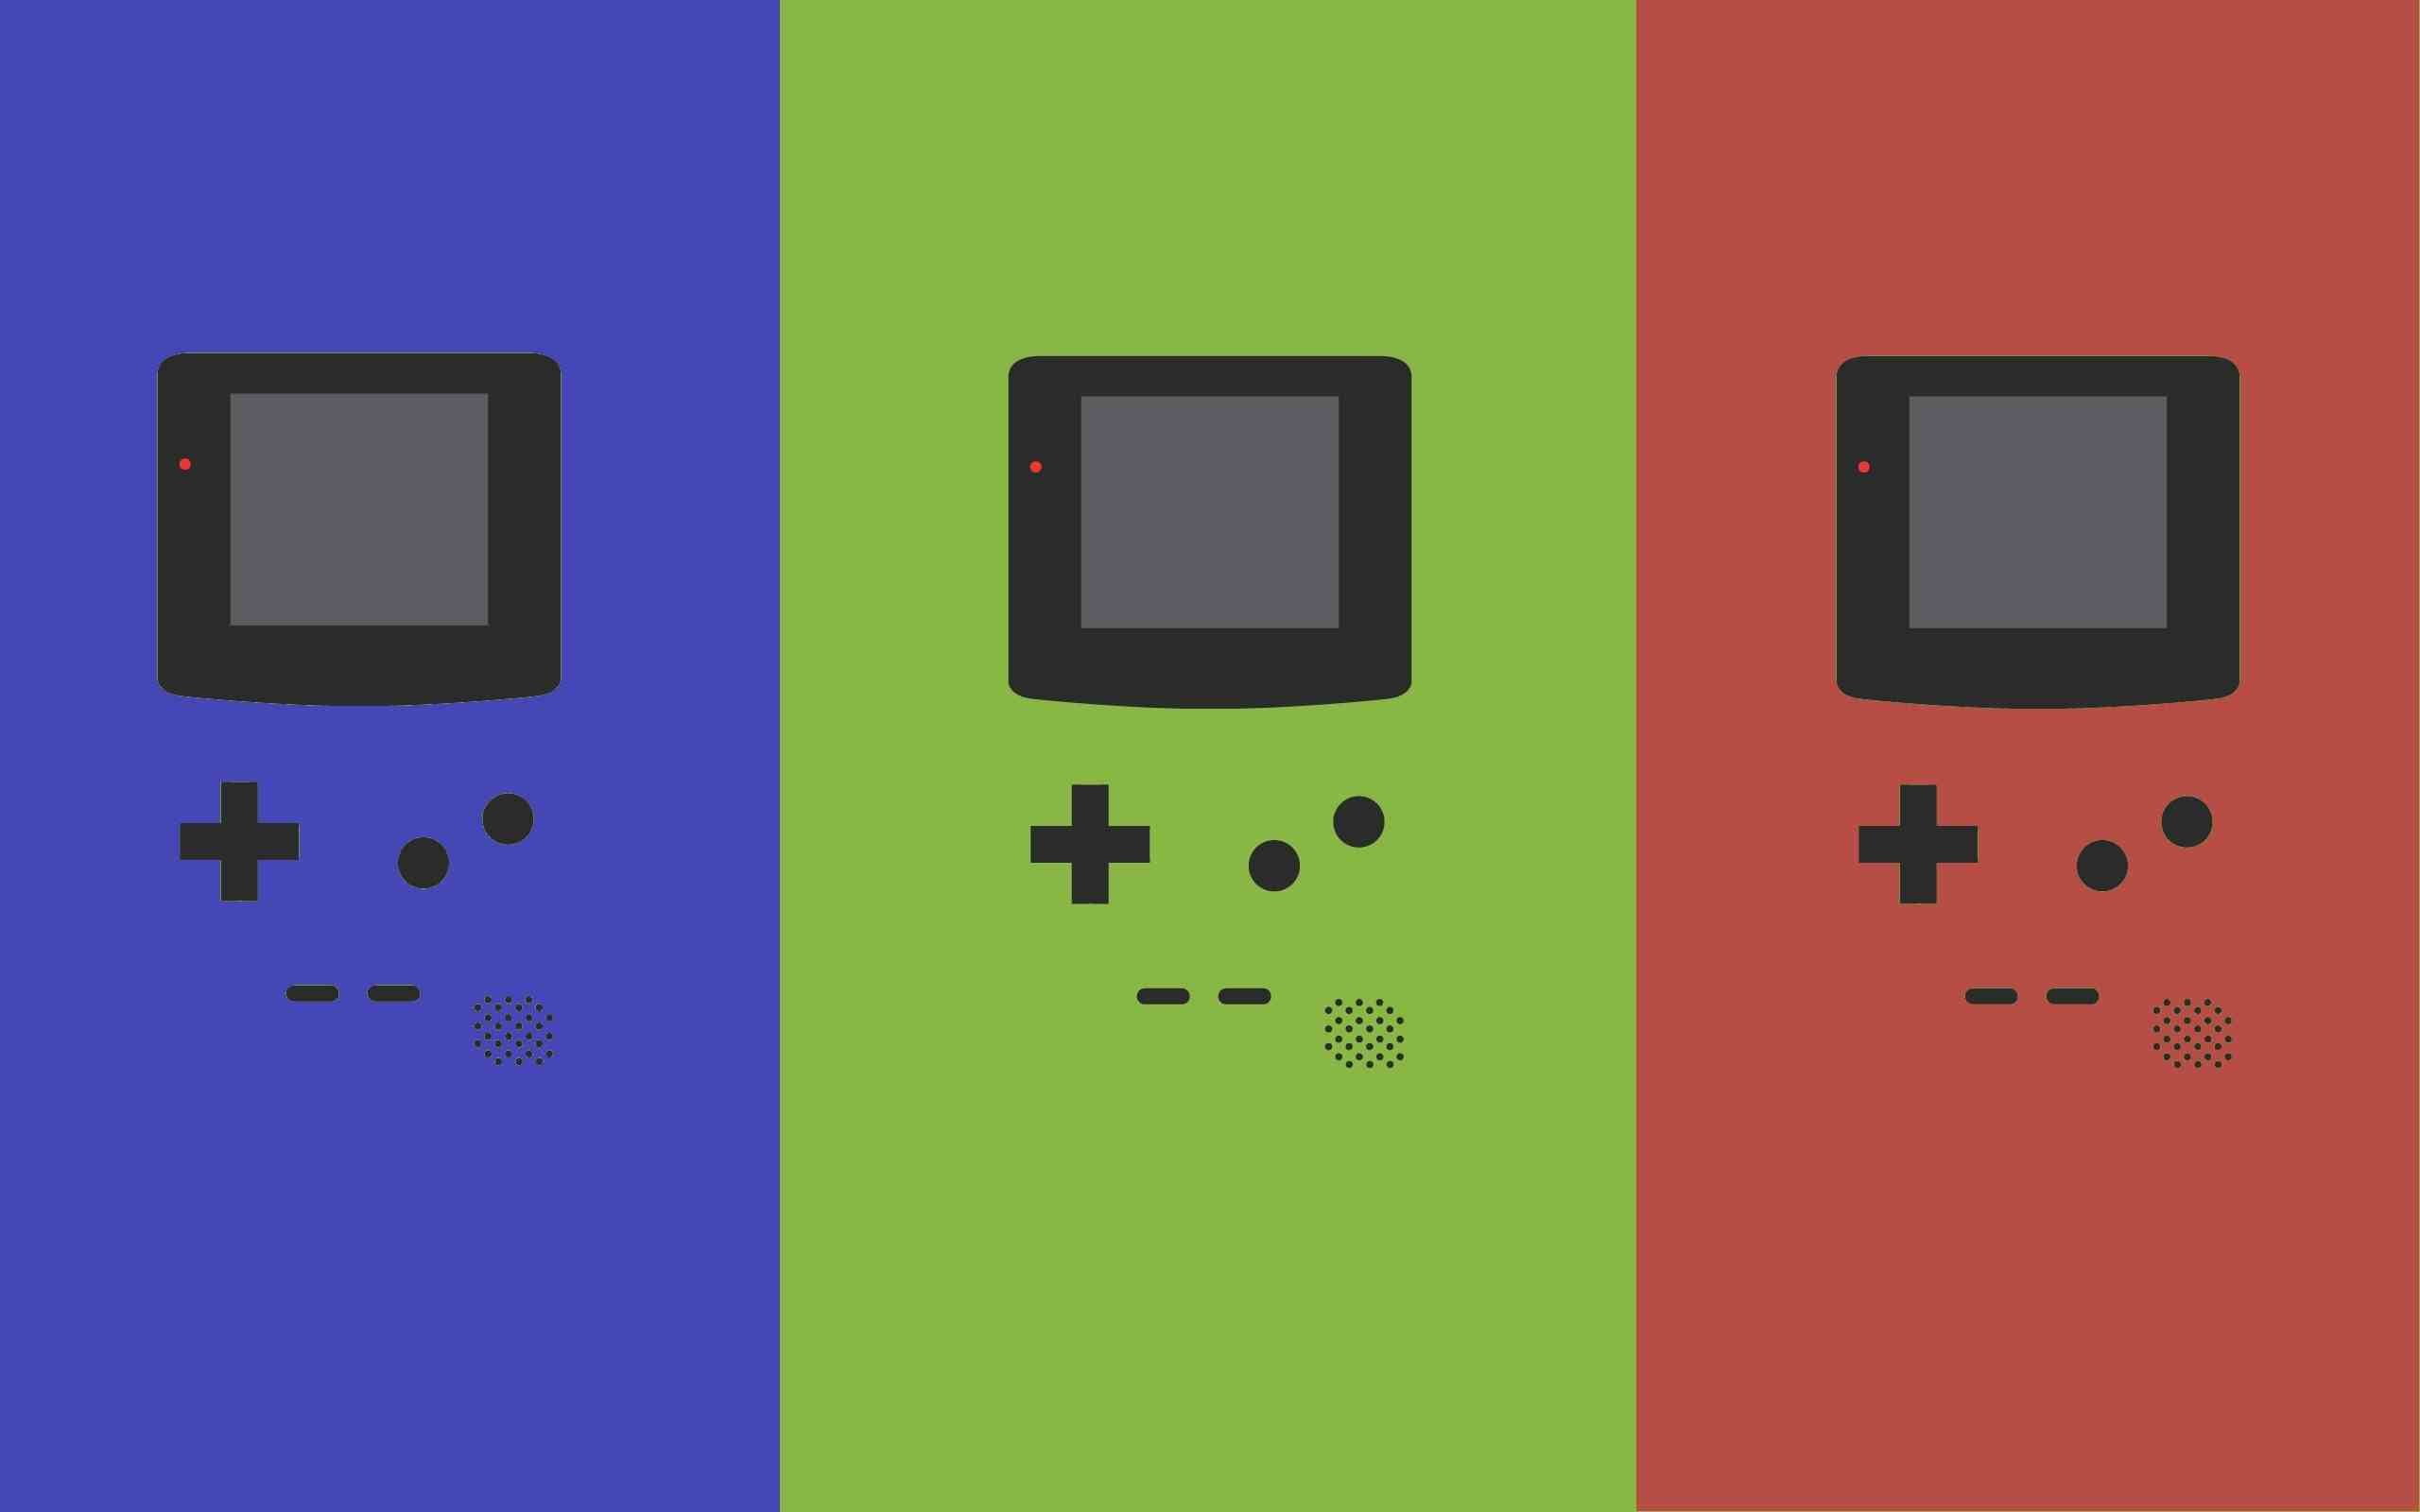 Nếu bạn là fan của Game Boy Color, chắc hẳn hình ảnh này sẽ khiến bạn phấn khích. Hãy ngắm nhìn chiếc máy game kinh điển này trong một bức ảnh rực rỡ và đầy màu sắc.